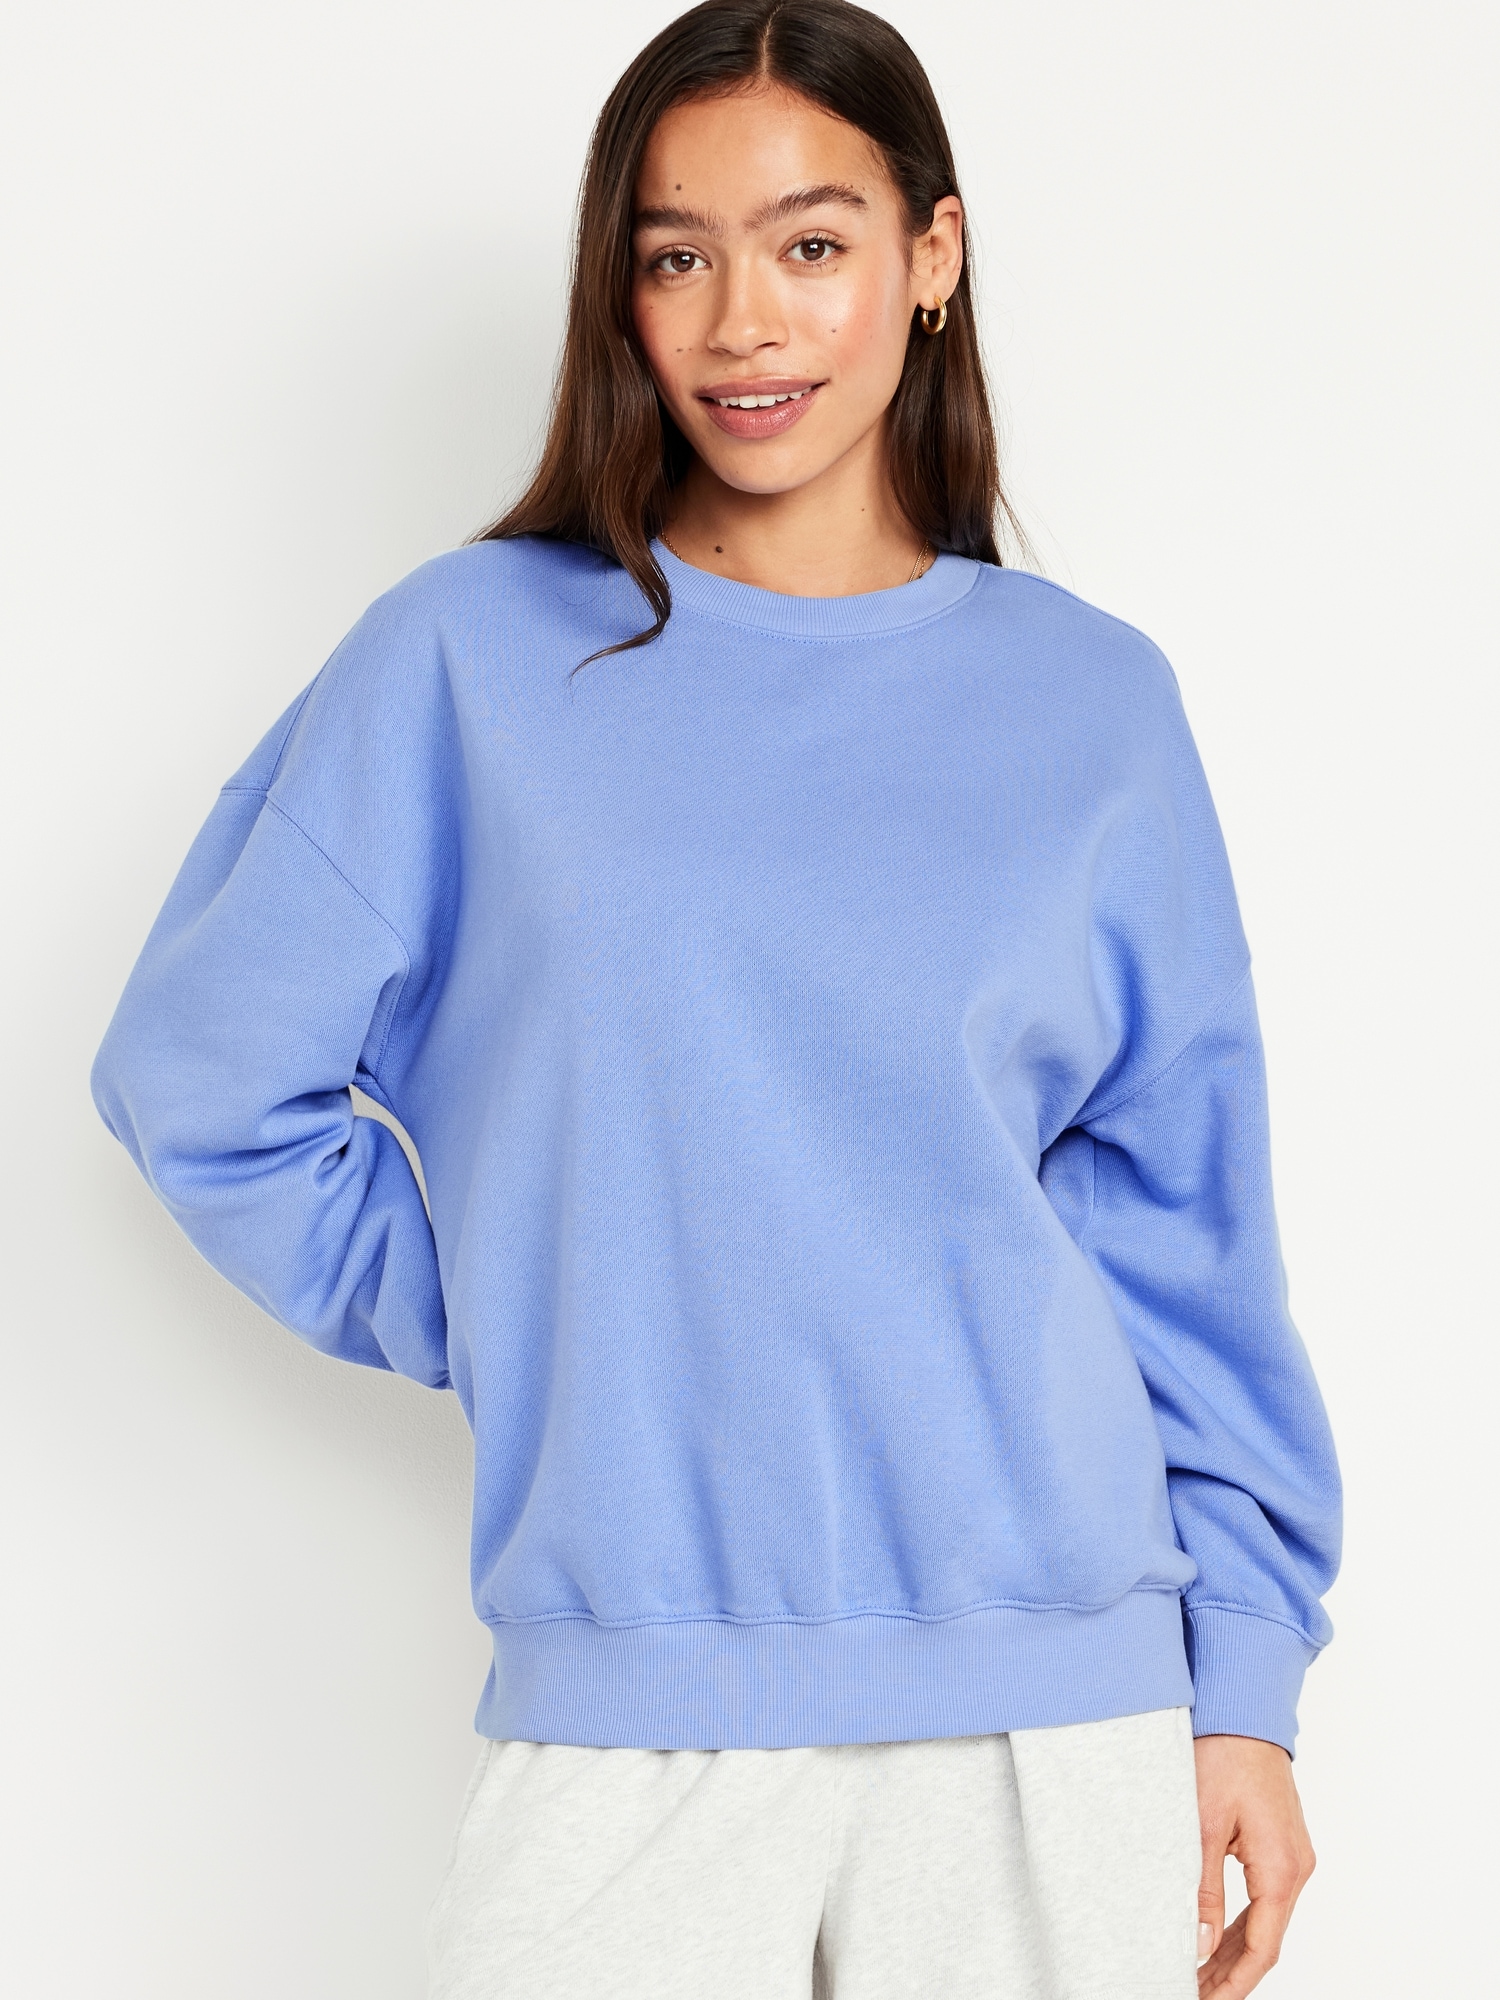 Oversized Tunic Sweatshirt Hot Deal